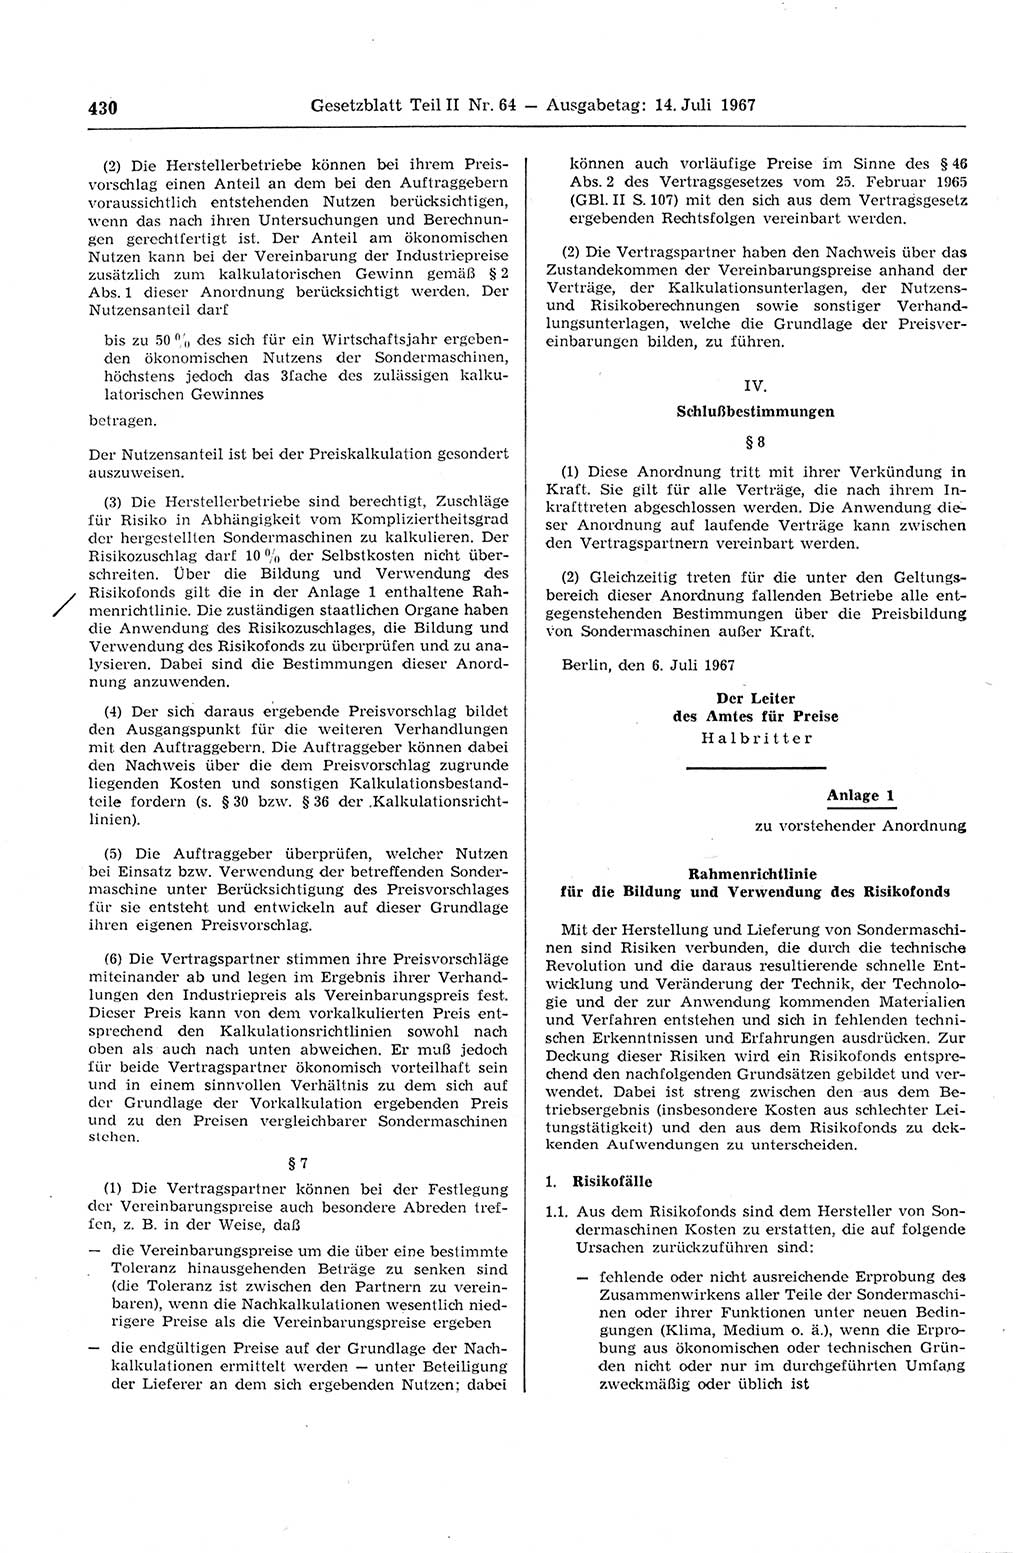 Gesetzblatt (GBl.) der Deutschen Demokratischen Republik (DDR) Teil ⅠⅠ 1967, Seite 430 (GBl. DDR ⅠⅠ 1967, S. 430)